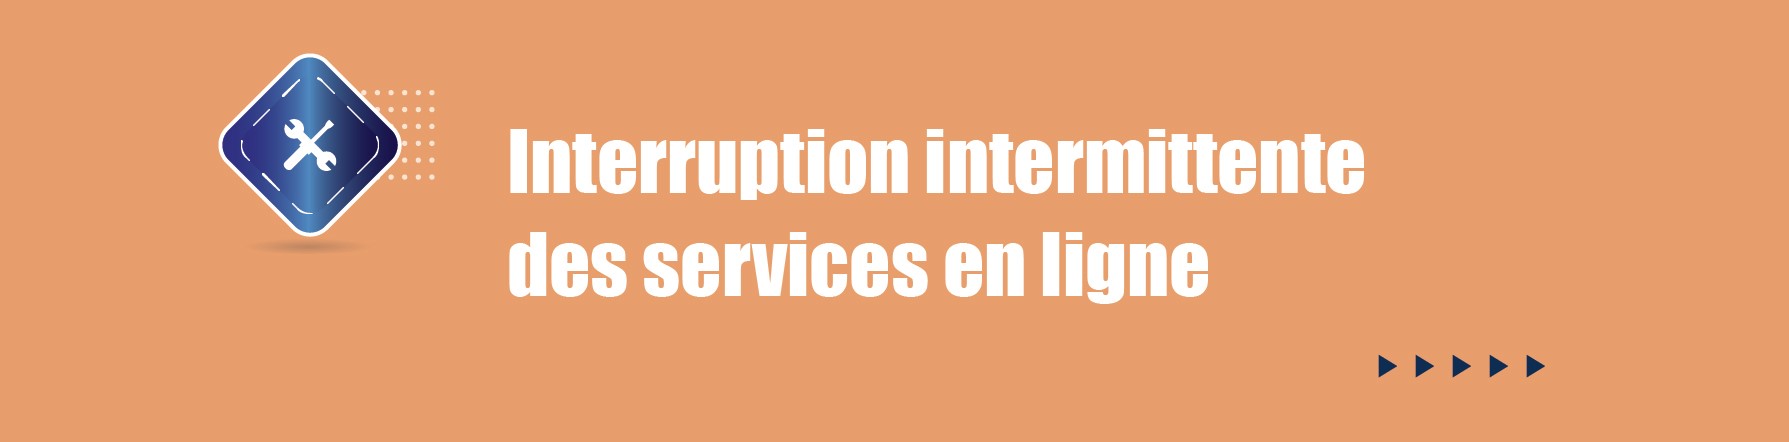 COMMUNIQUE – Interruption intermittente des services en ligne